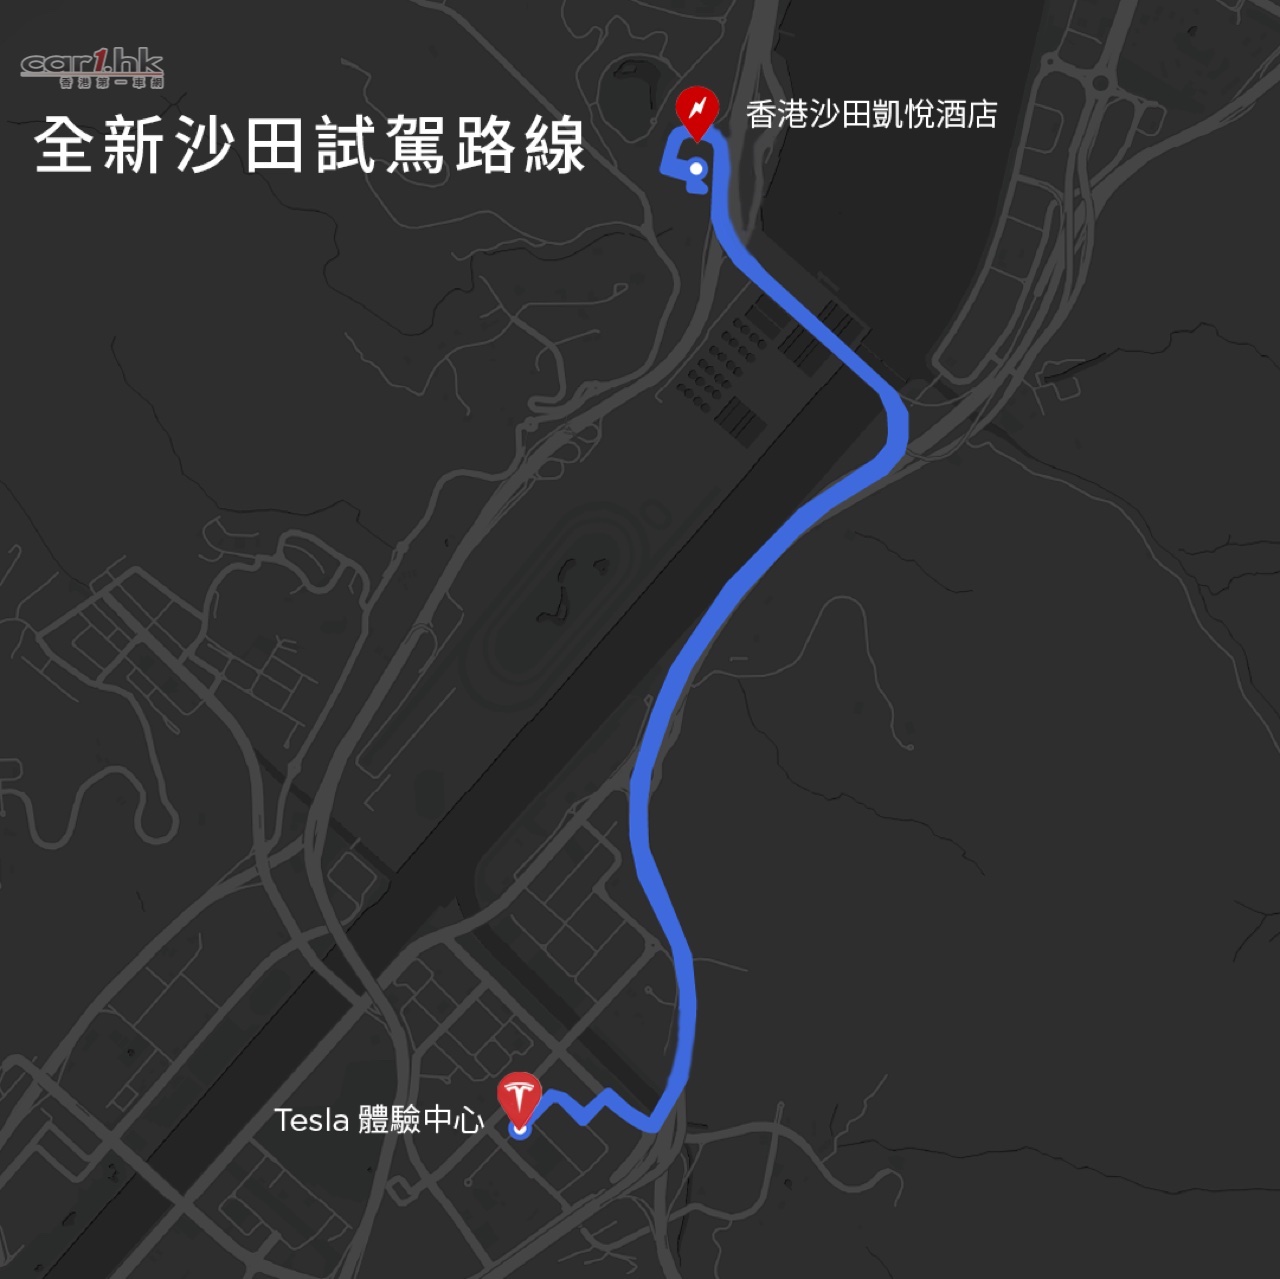 全新tesla 沙田小瀝源試駕及體驗中心首階段正式開幕 香港第一車網car1 Hk